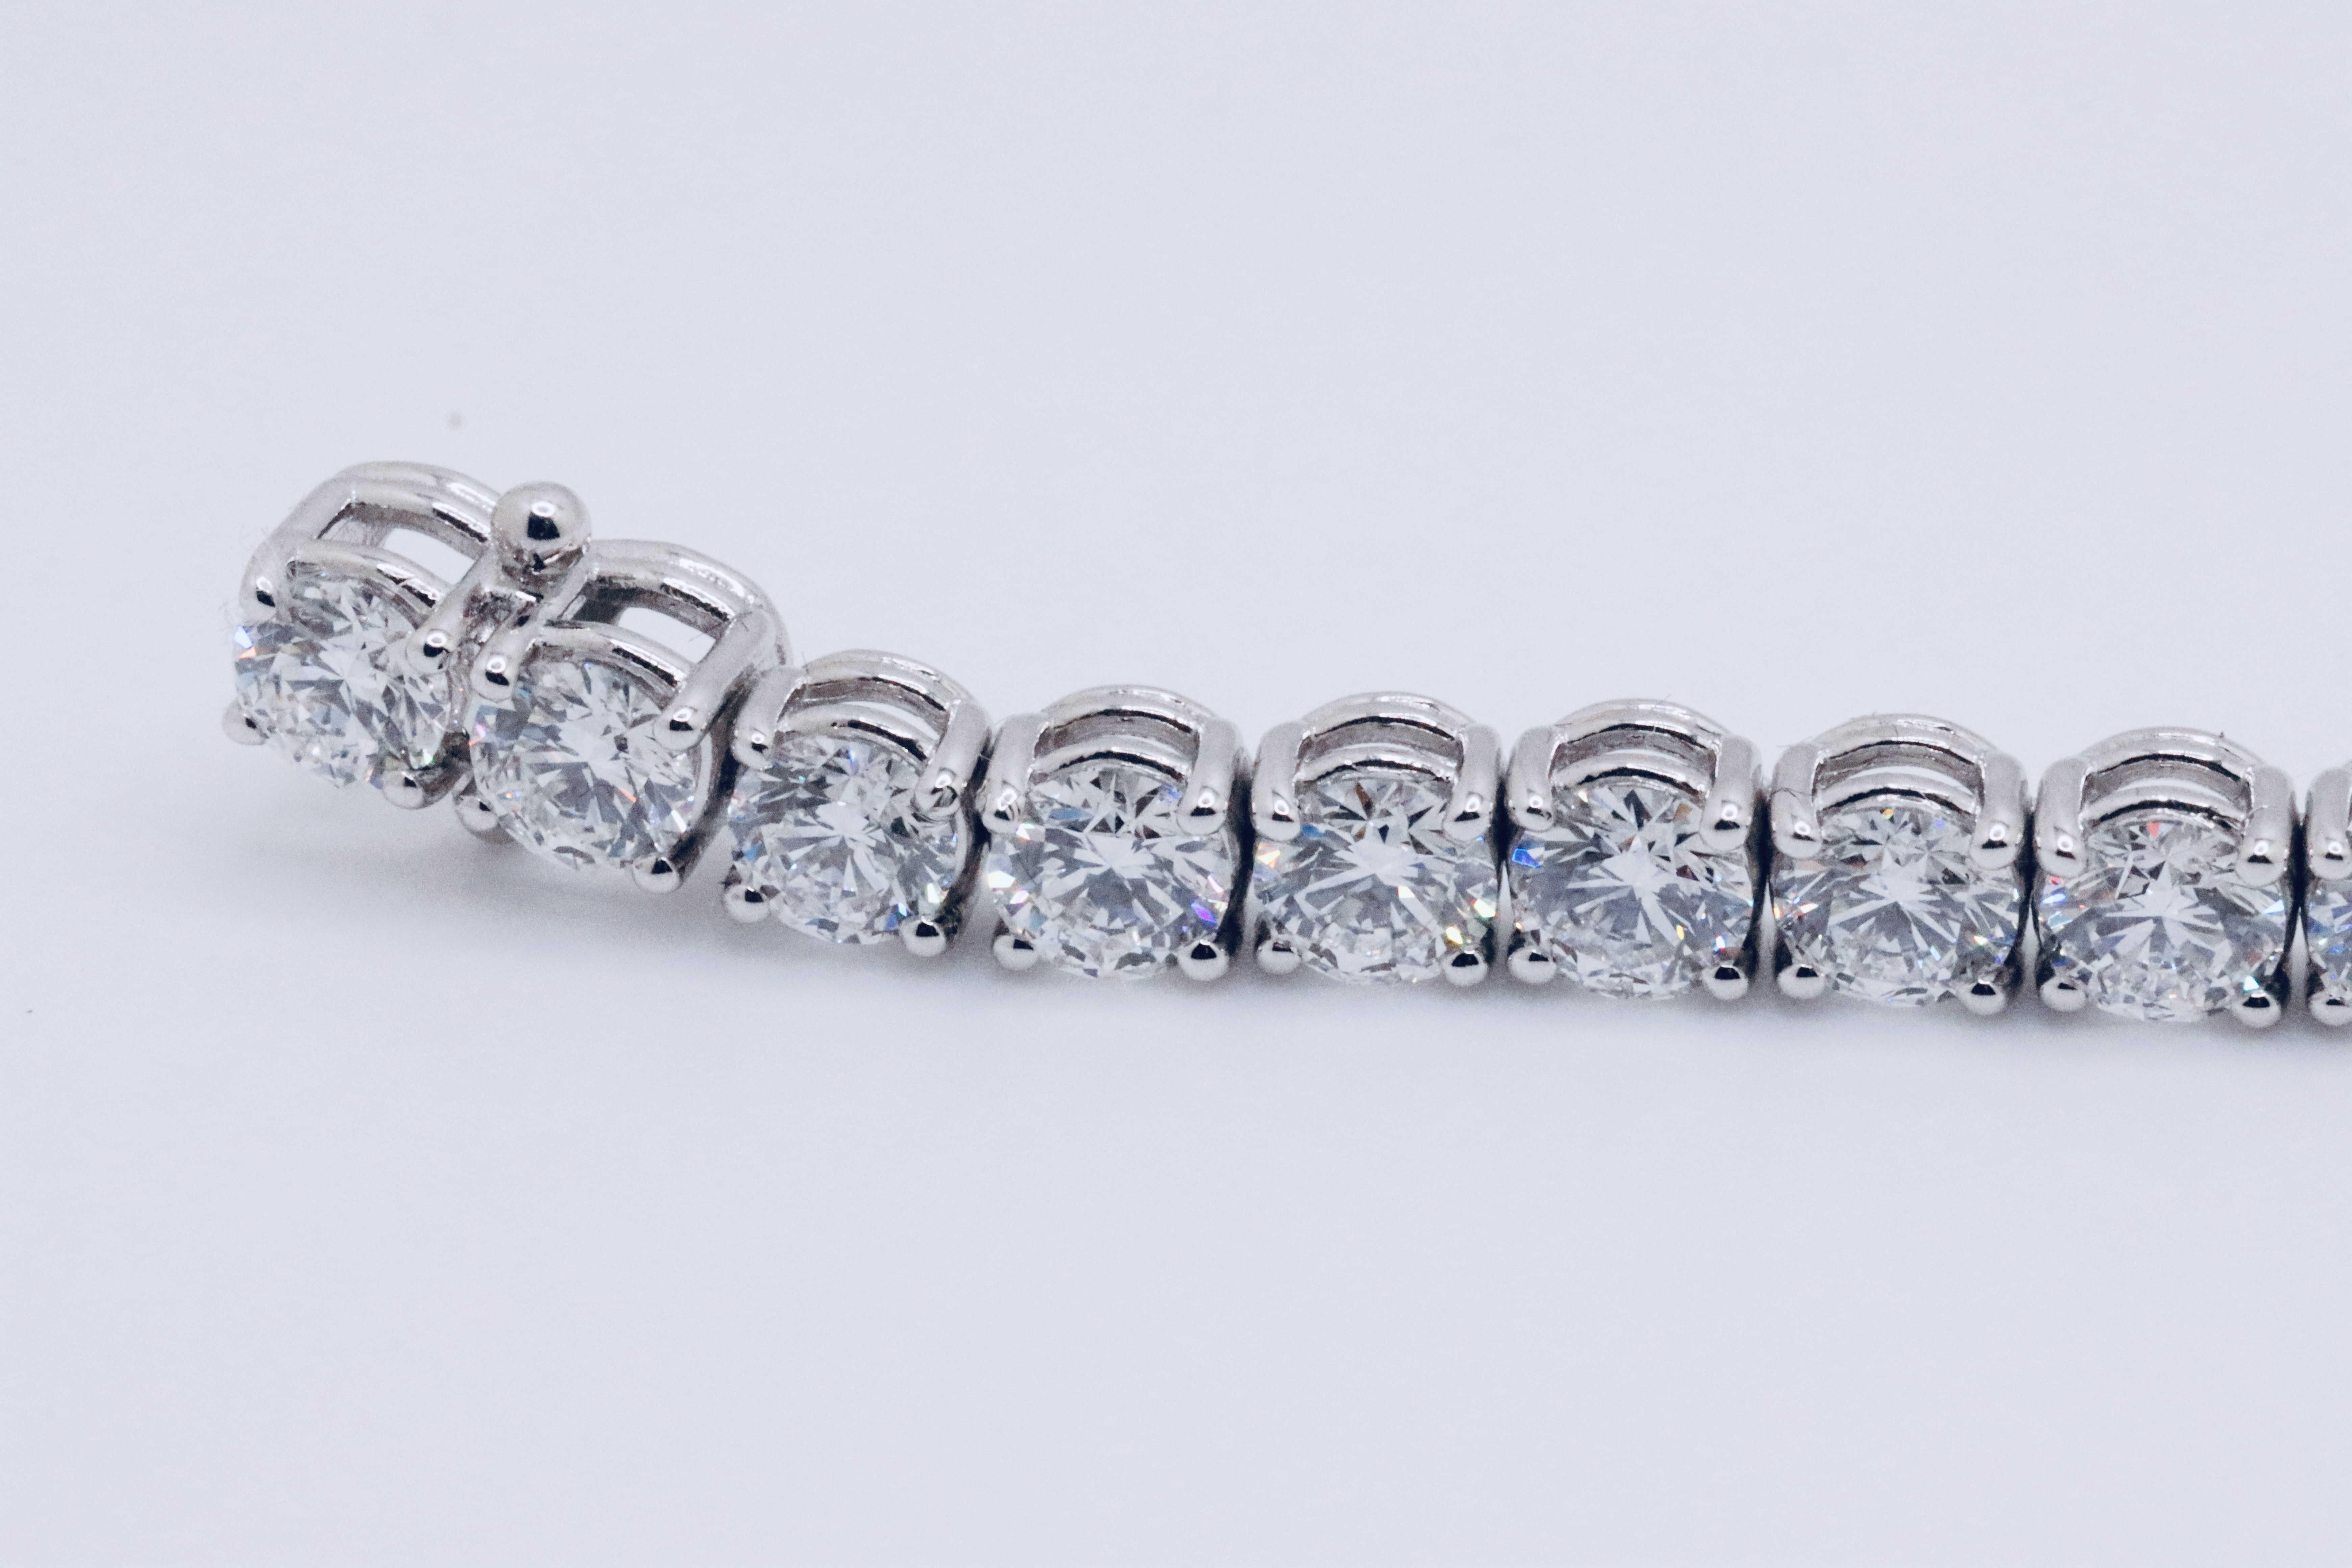 Round Brilliant Cut 14 Carat Diamond Tennis Bracelet D Colour VVS Clarity - 18Kt White Gold - IGI - Image 21 of 31